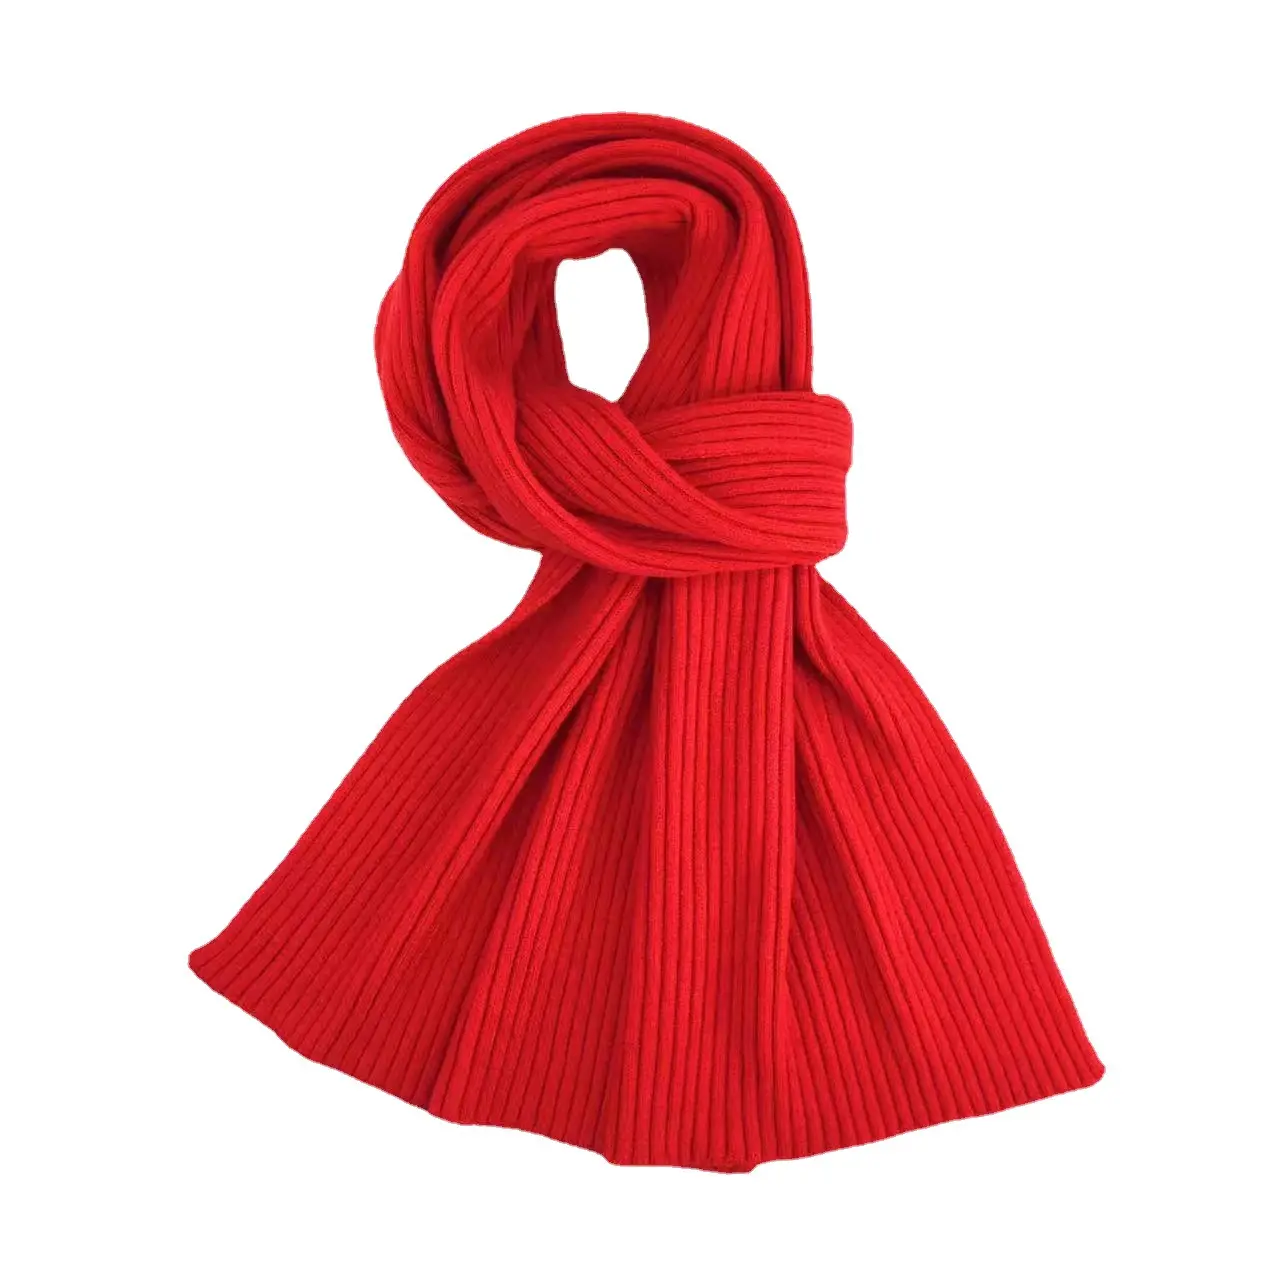 Vente en gros écharpes chaudes à tricoter en fil tissé multicolore, broderie personnalisée, logo, écharpe d'hiver en tricot pour hommes et femmes